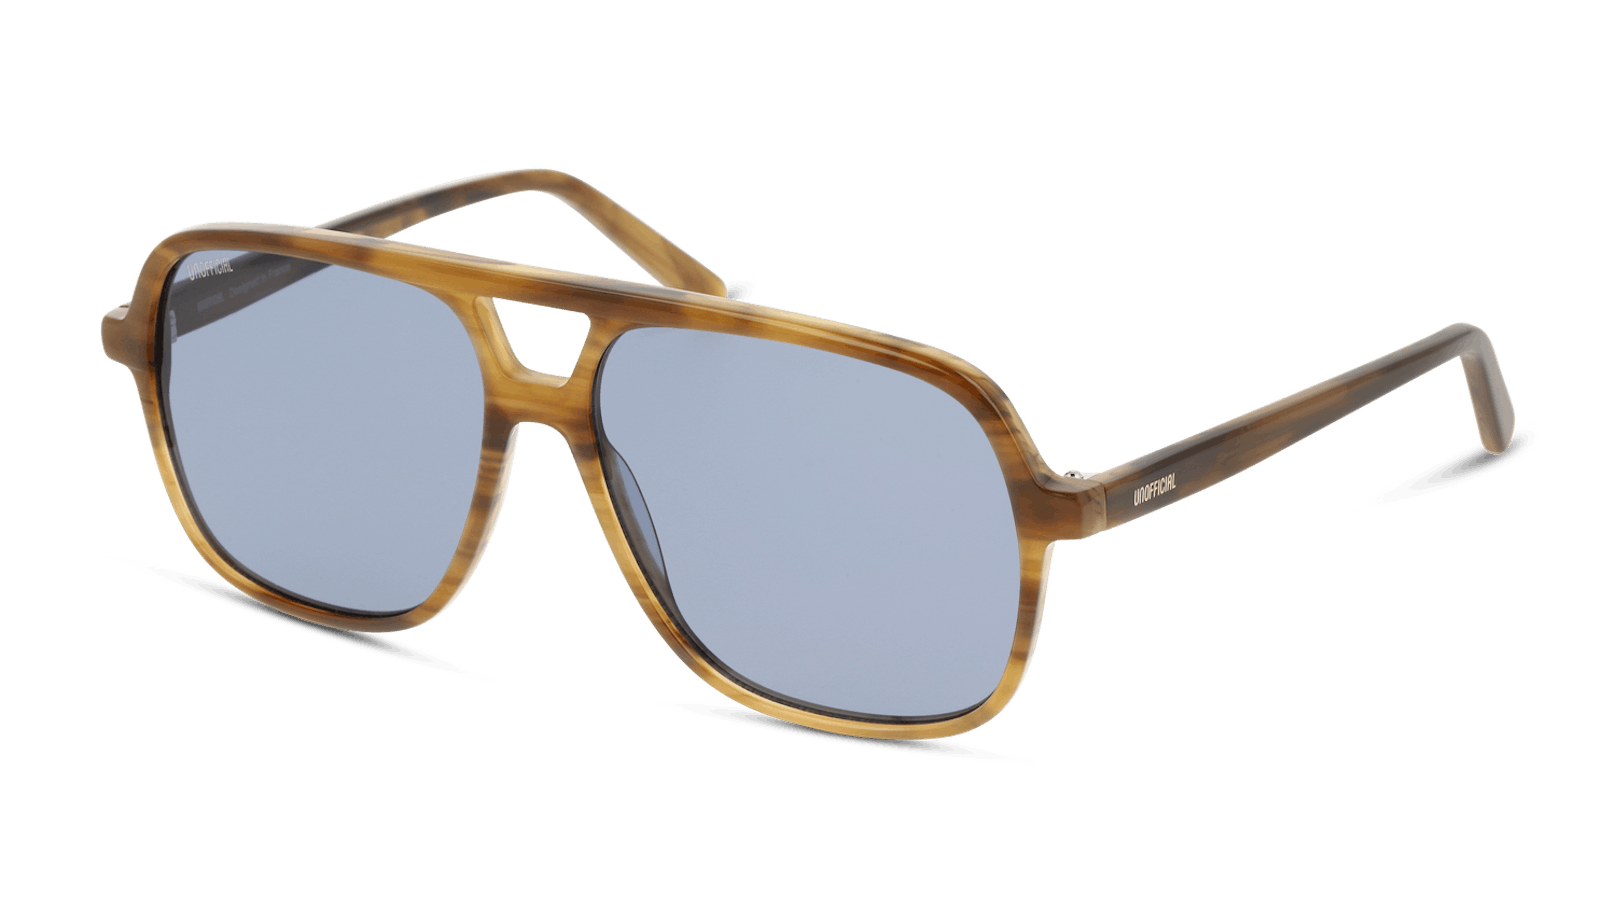 UNOFFICIAL-Sonnenbrille von Pearle aus der aktuellen Herbst/Winter-Kollektion